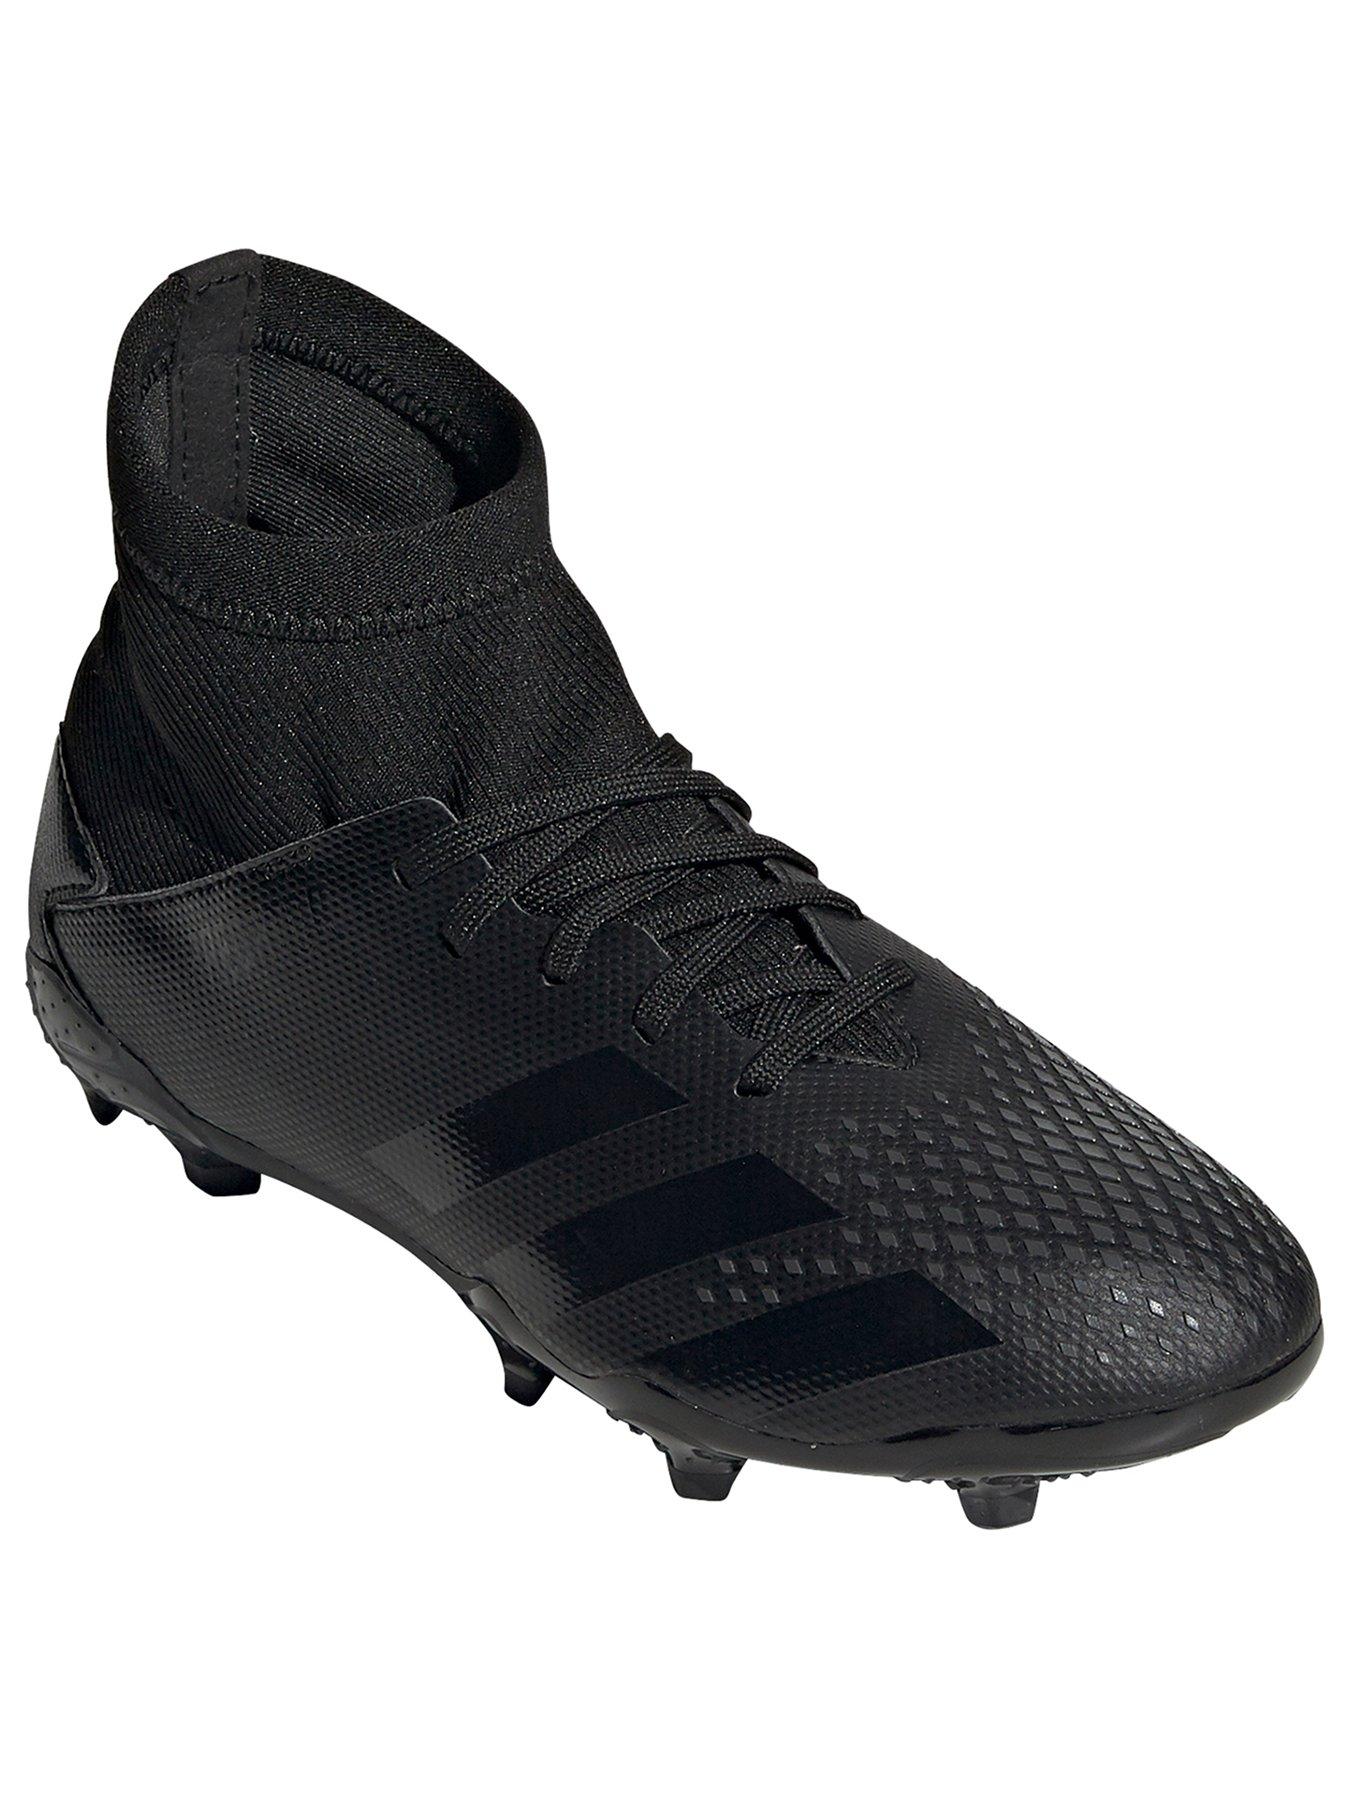 adidas 212 football boots